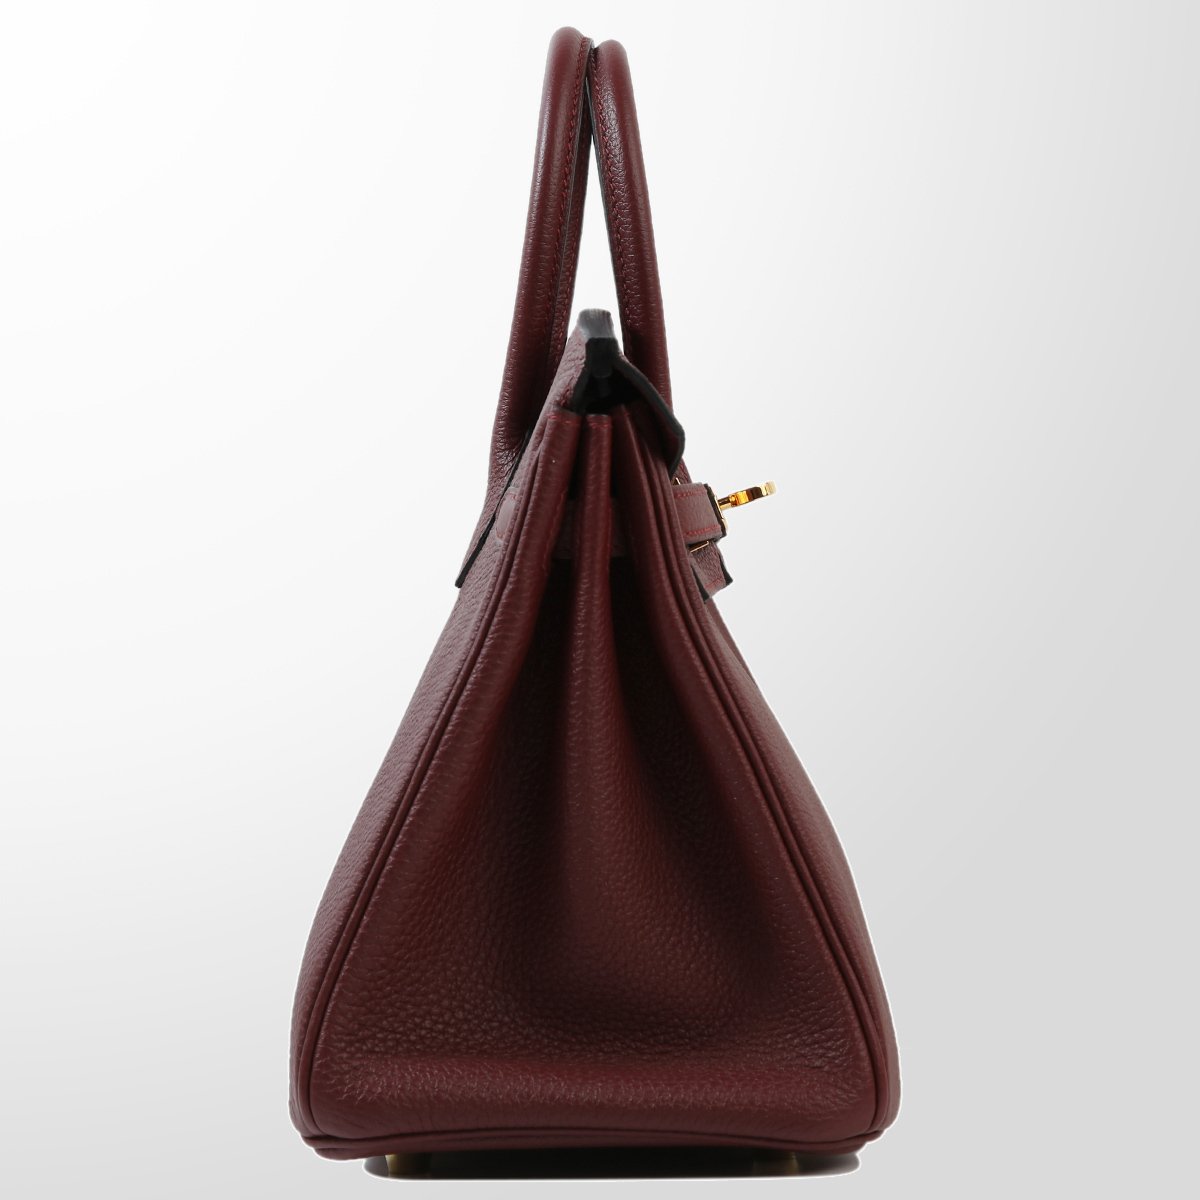 Hermes Birkin 25 Rouge H Togo Leather With Gold Hardware Handbag